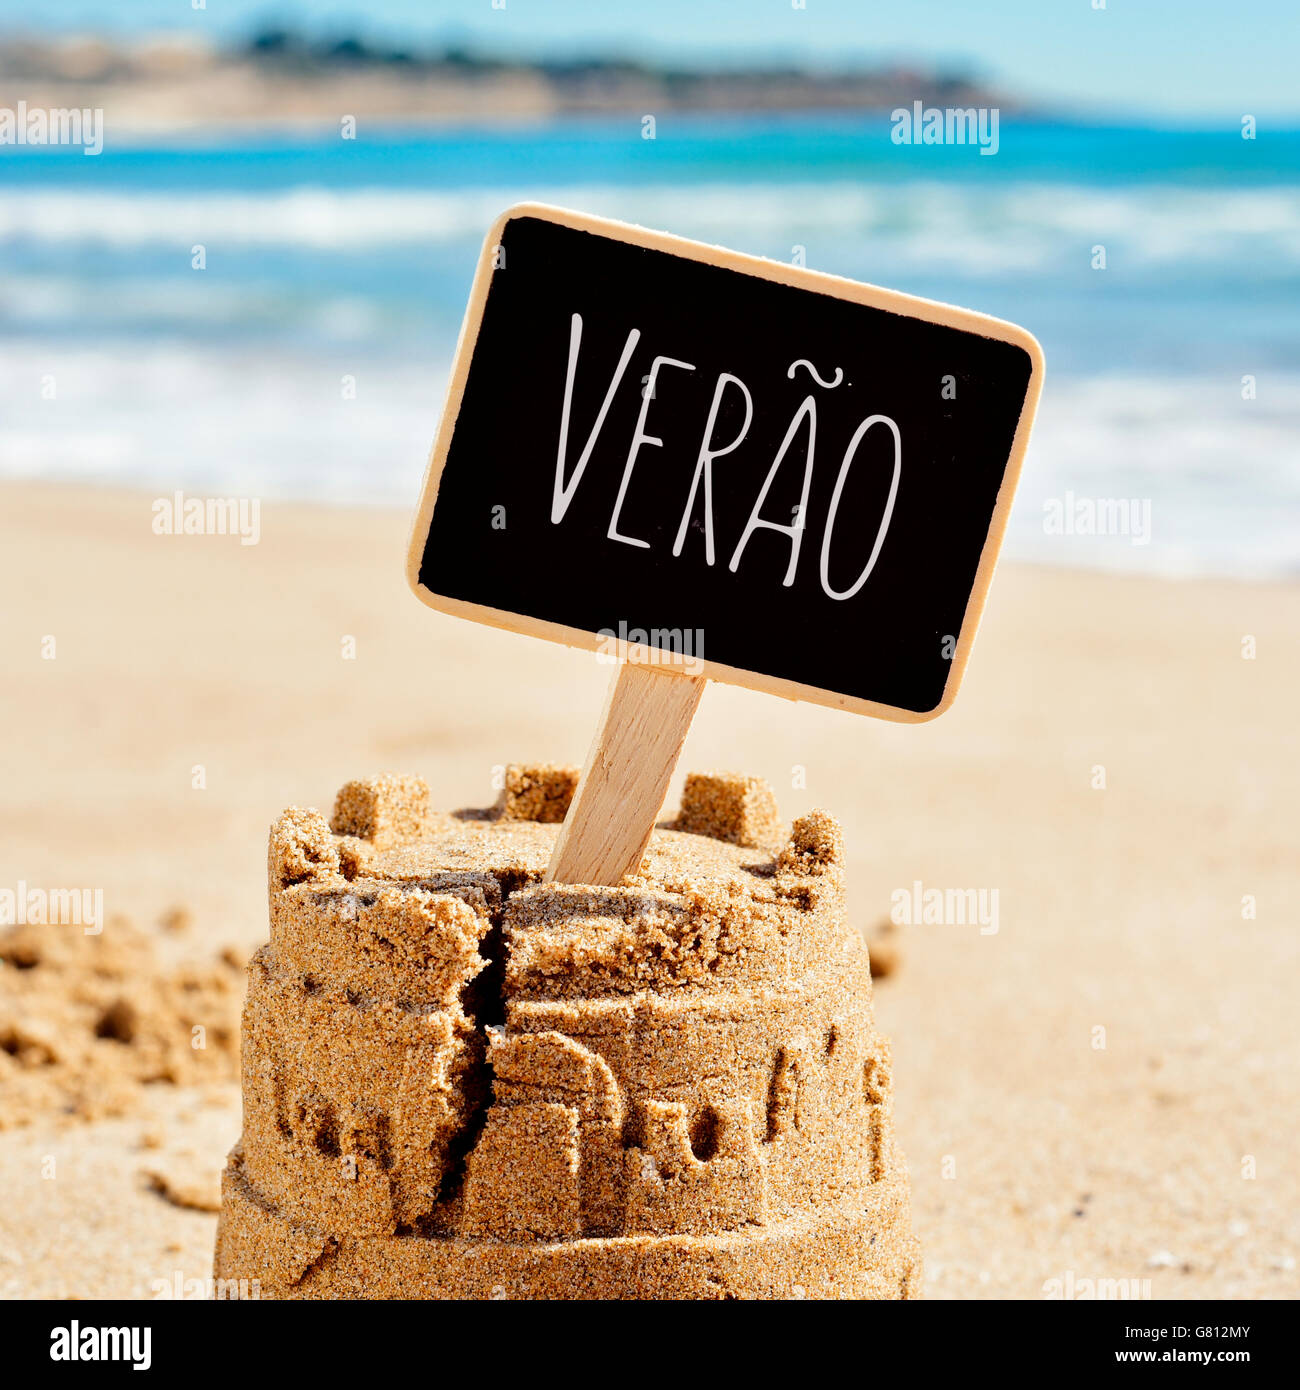 Primer plano de un castillo de arena en la arena de una playa negra rematada con un cartel con el texto verao, verano en portugués escrito, yo Foto de stock